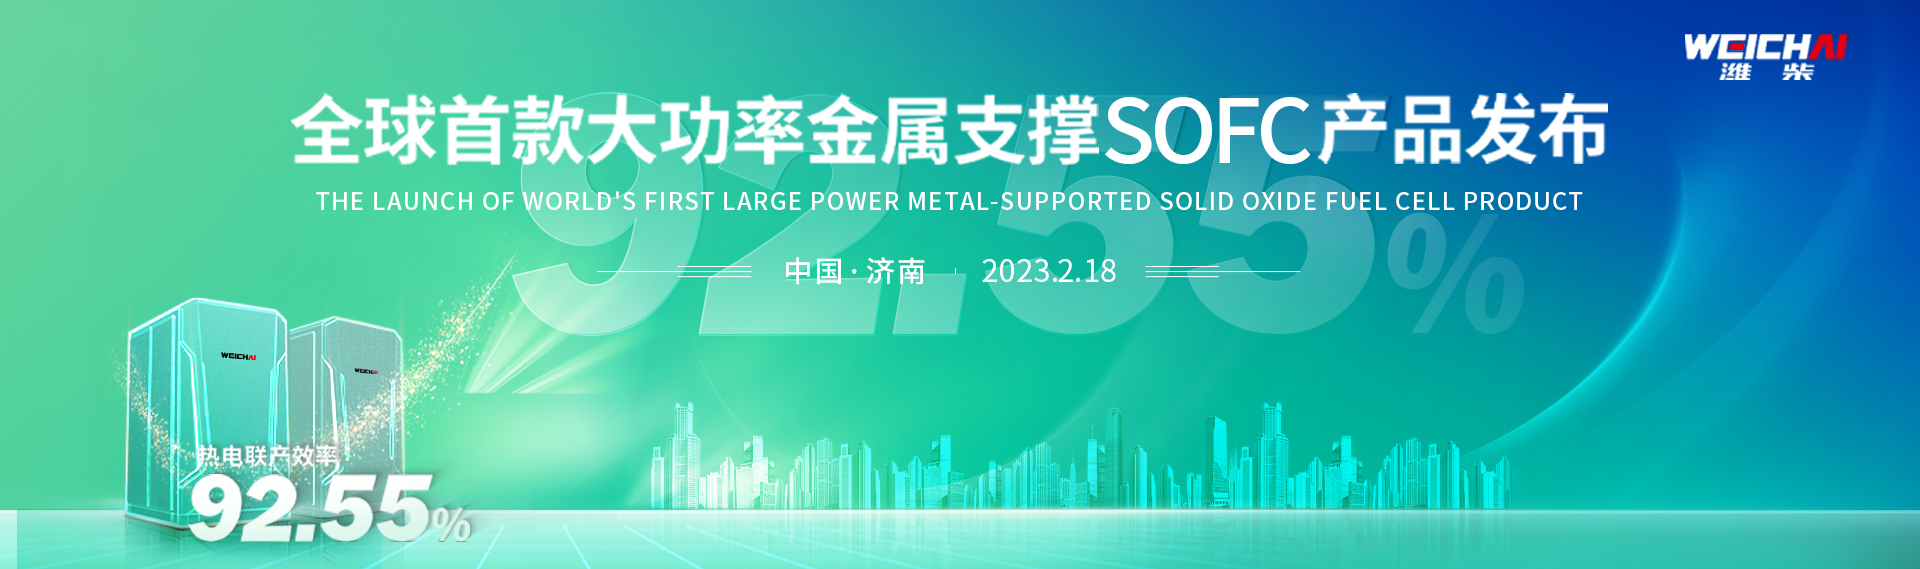 全球首款大功率金属支撑SOFC产品发布